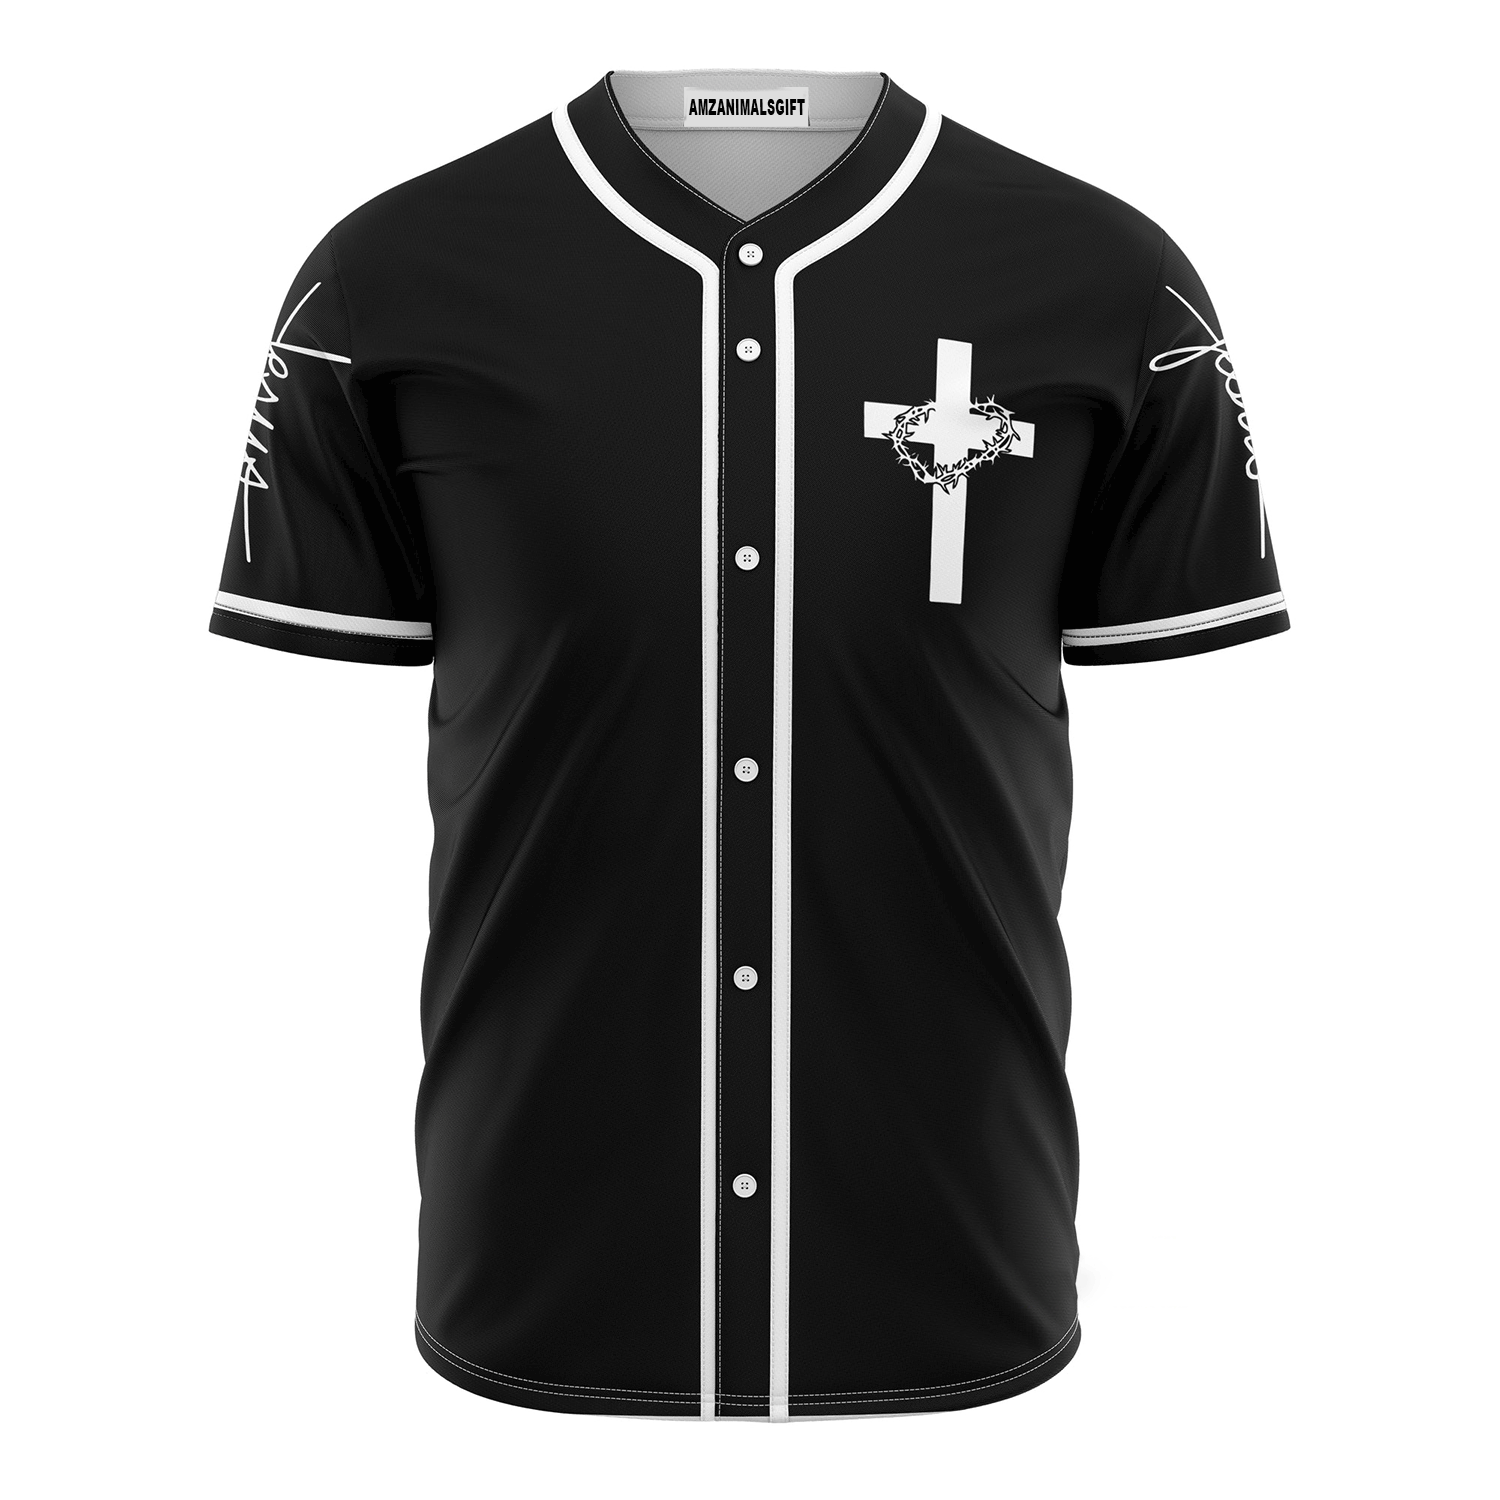 Personalized Jesus Baseball Jersey Shirt - Cross, God Baseball Jersey Shirt For Christians